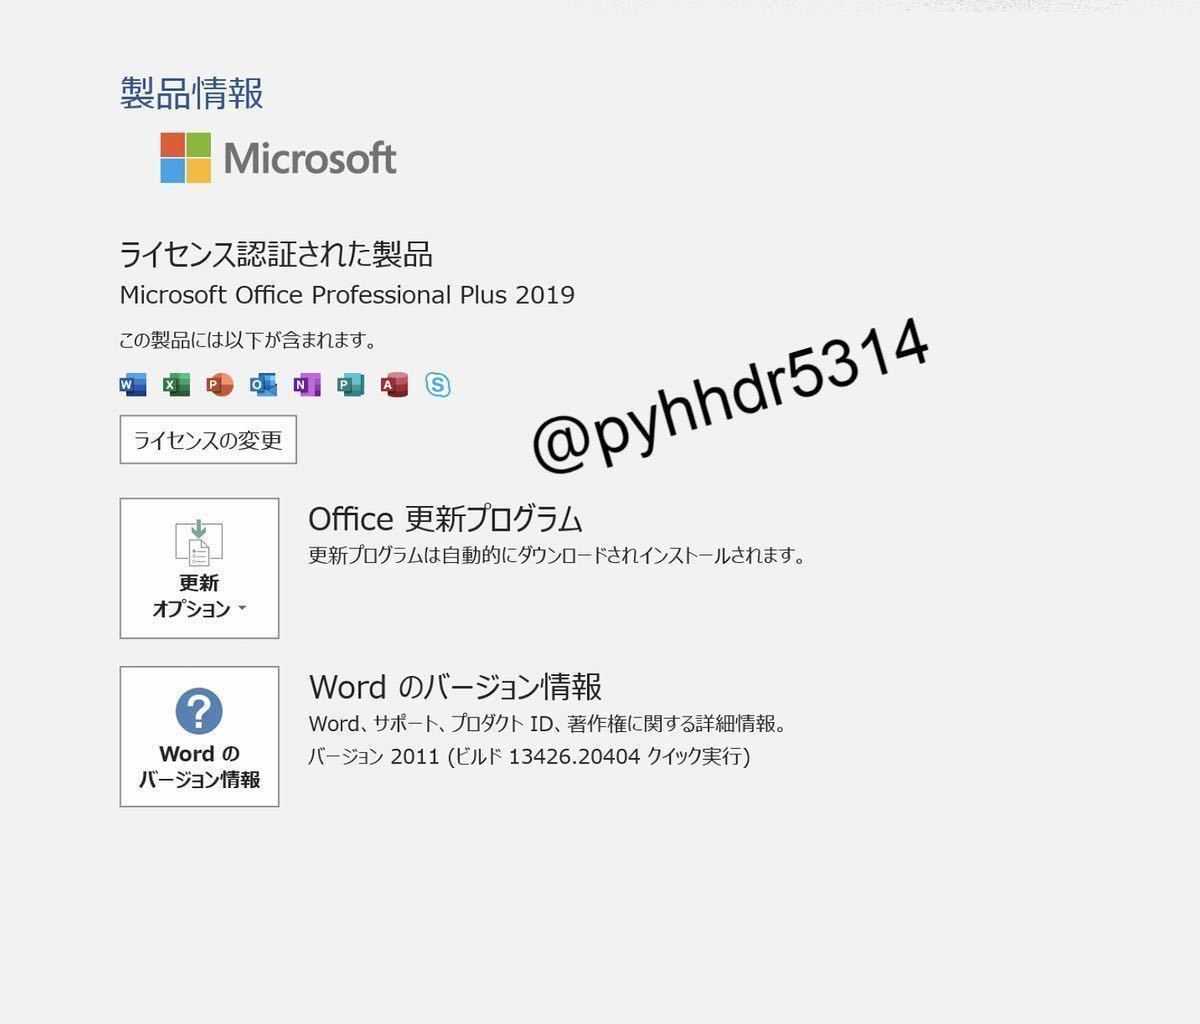 【即対応★正規認証】 Microsoft Office 2019 Professional Plus 正規認証プロダクトキー 自己アカウント管理 日本語手順書有_画像4